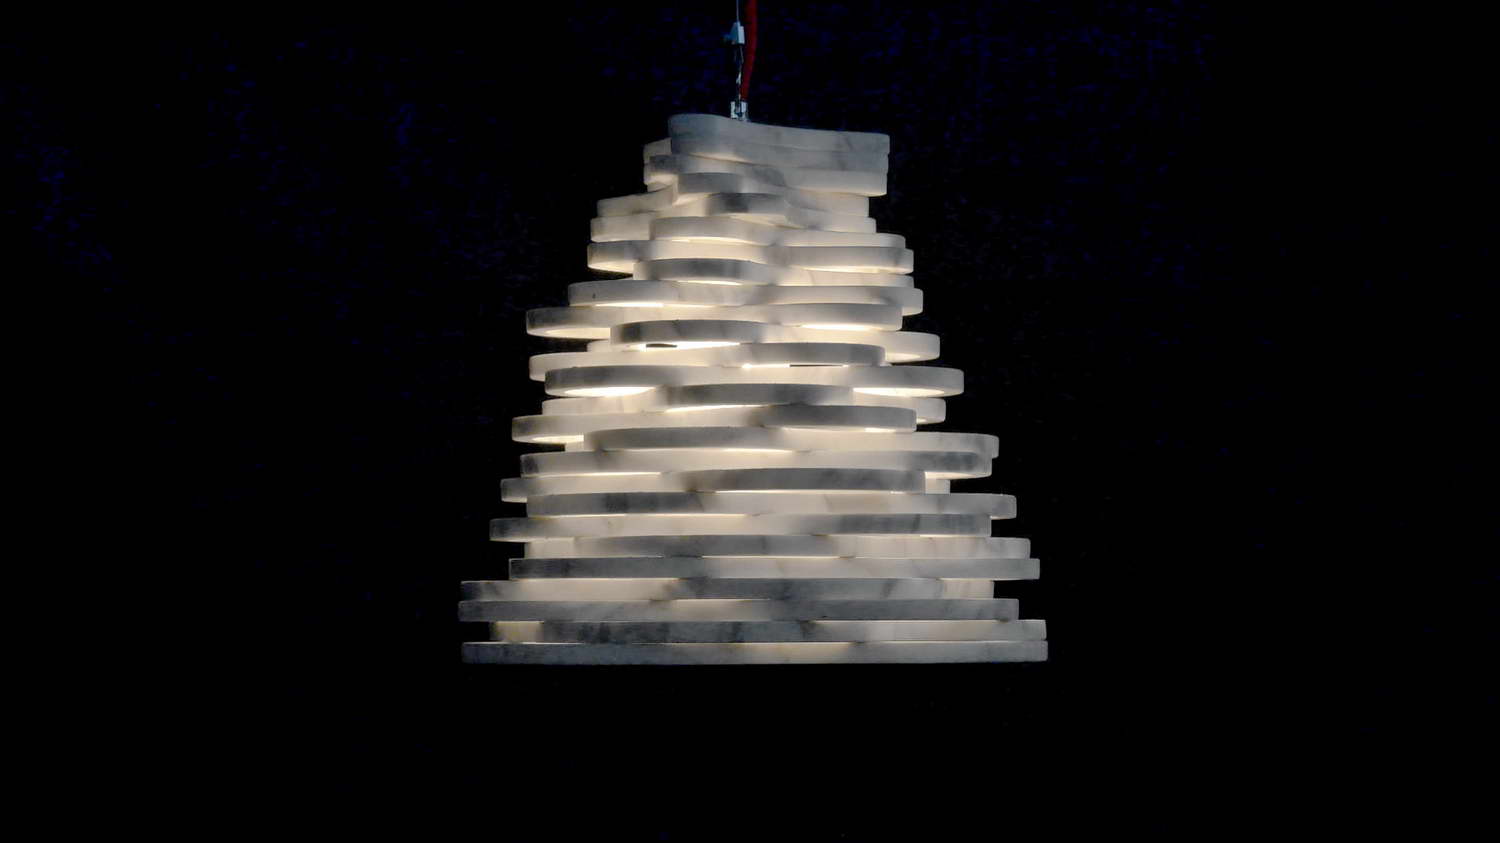 Annika lampada da tavolo a sospensione in marmo Calacatta Carrara, progettata dal designer Paolo Ulian